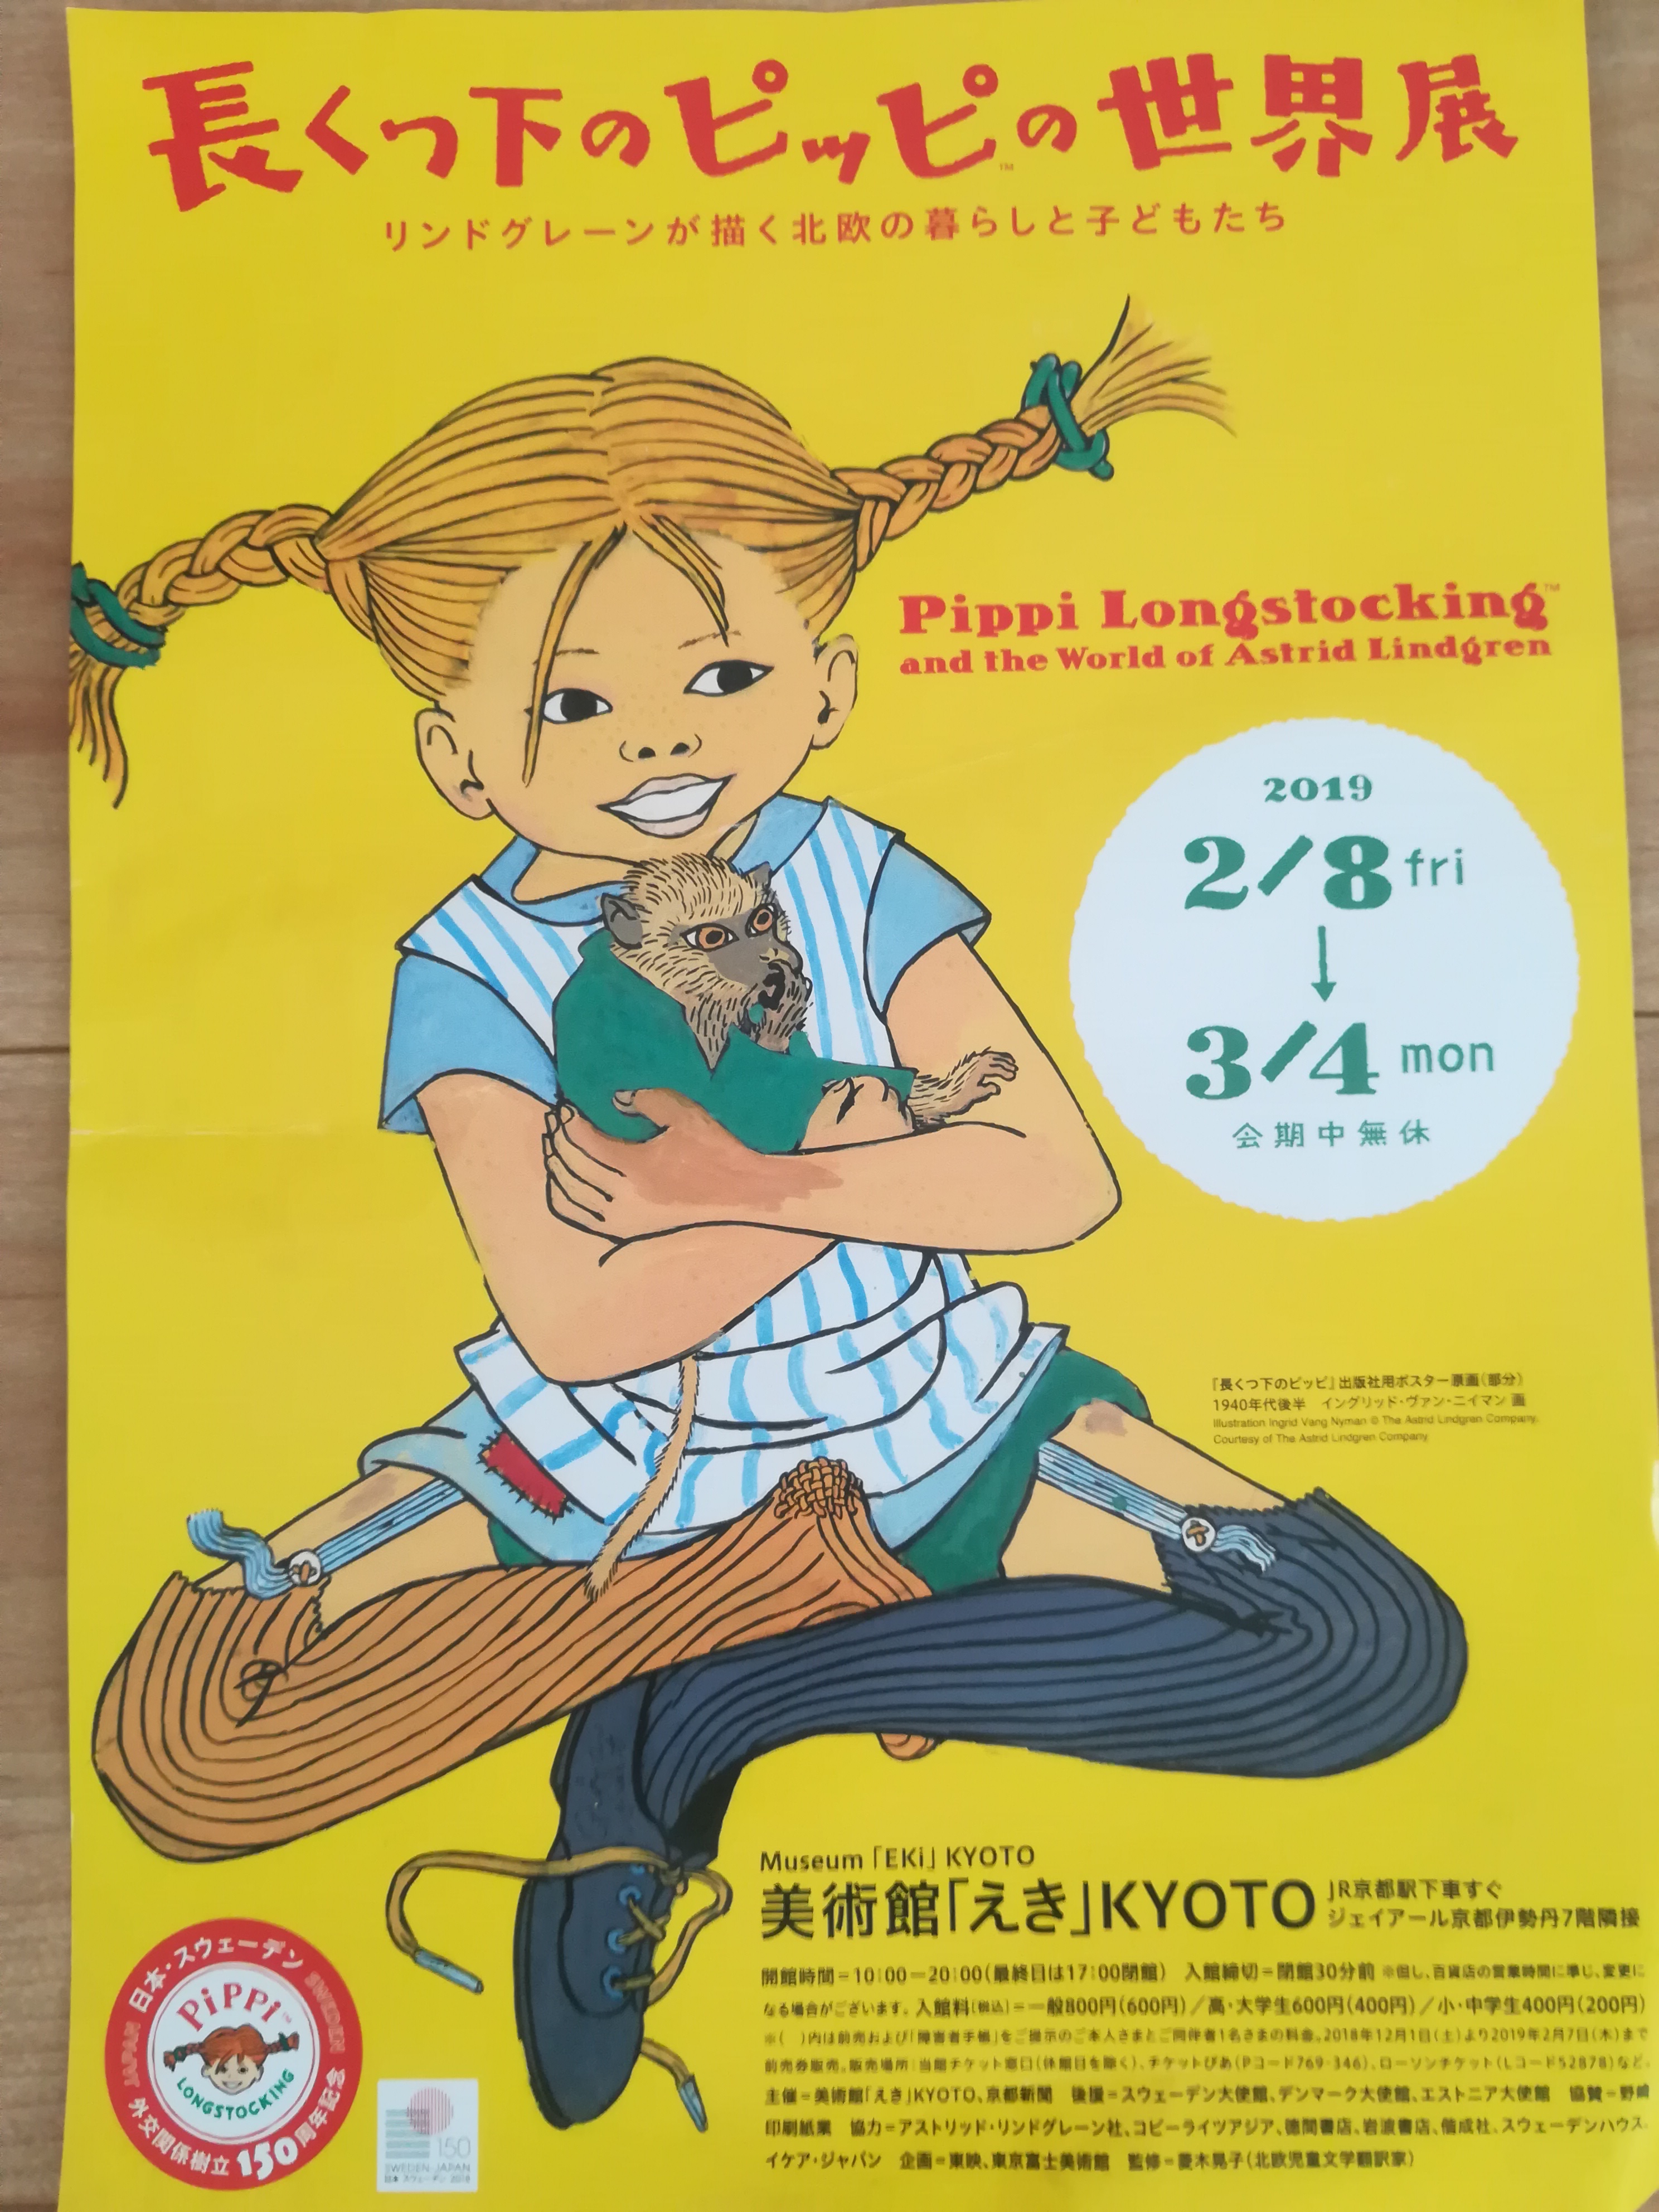 「懐かしいっ」思わず呟いてしまう！京都駅で開催されている『 長くつ下のピッピの世界展』に行ってきました！【3月4日まで】